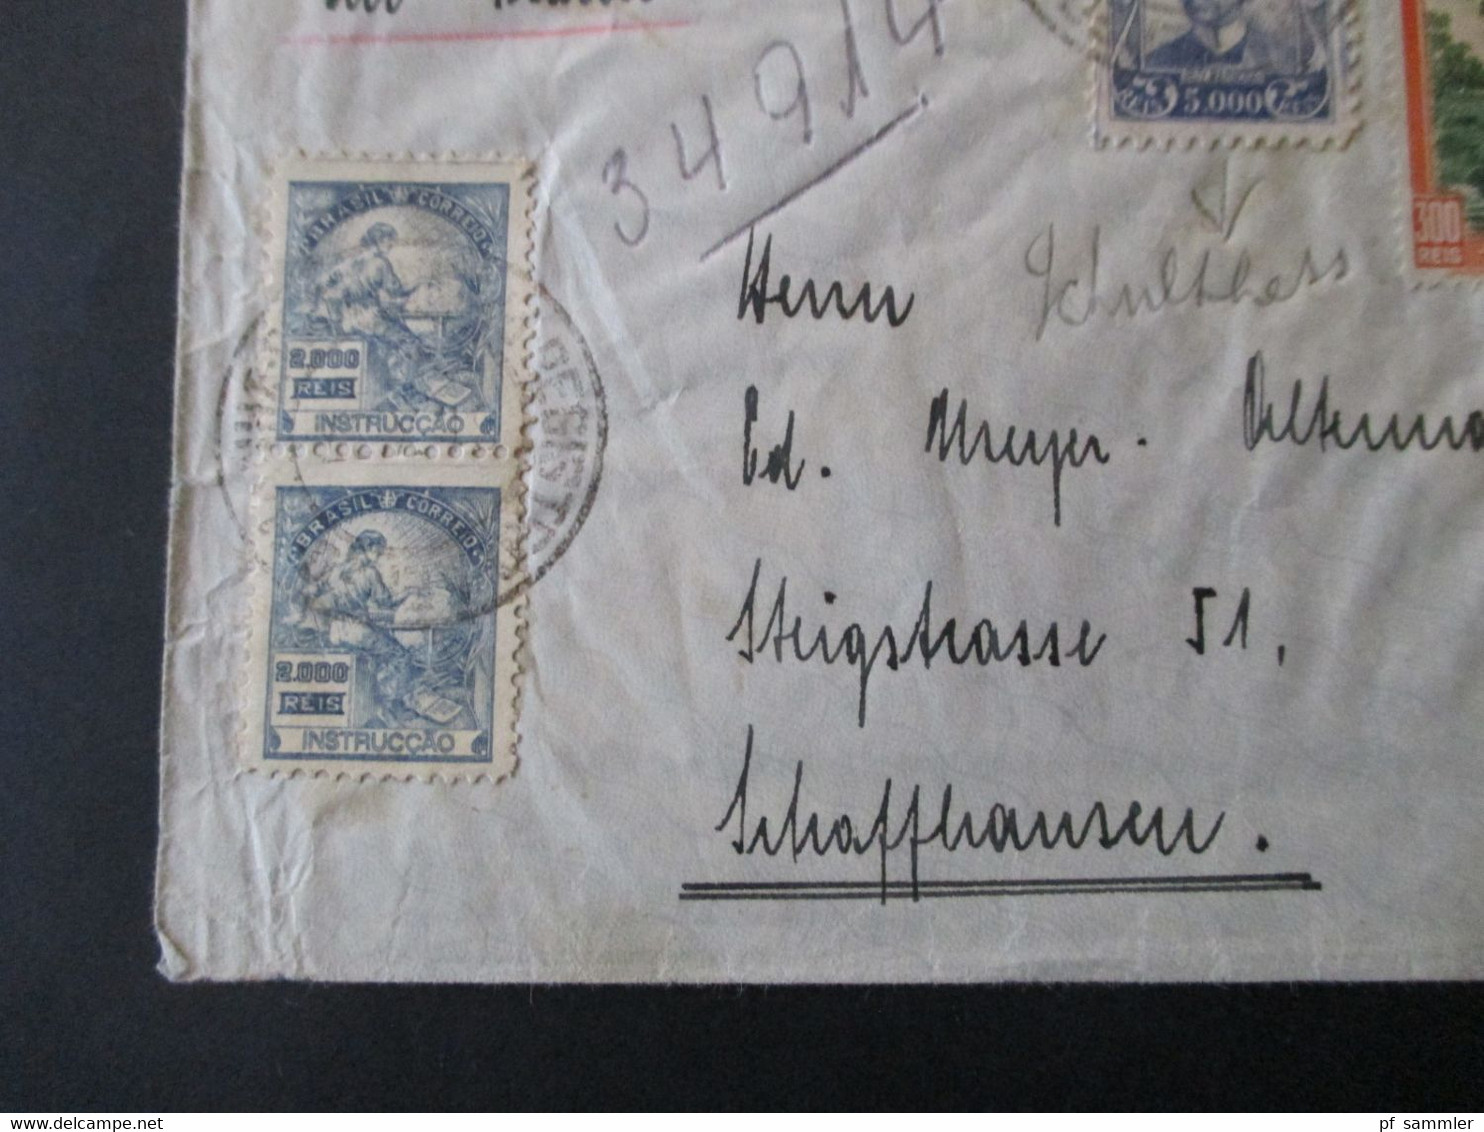 Brasilien 1937 Luftpost In Die Schweiz MiF Mit Fremdenverkehr Landschaften Umschlag Rene Hausheer Pernambuco - Storia Postale